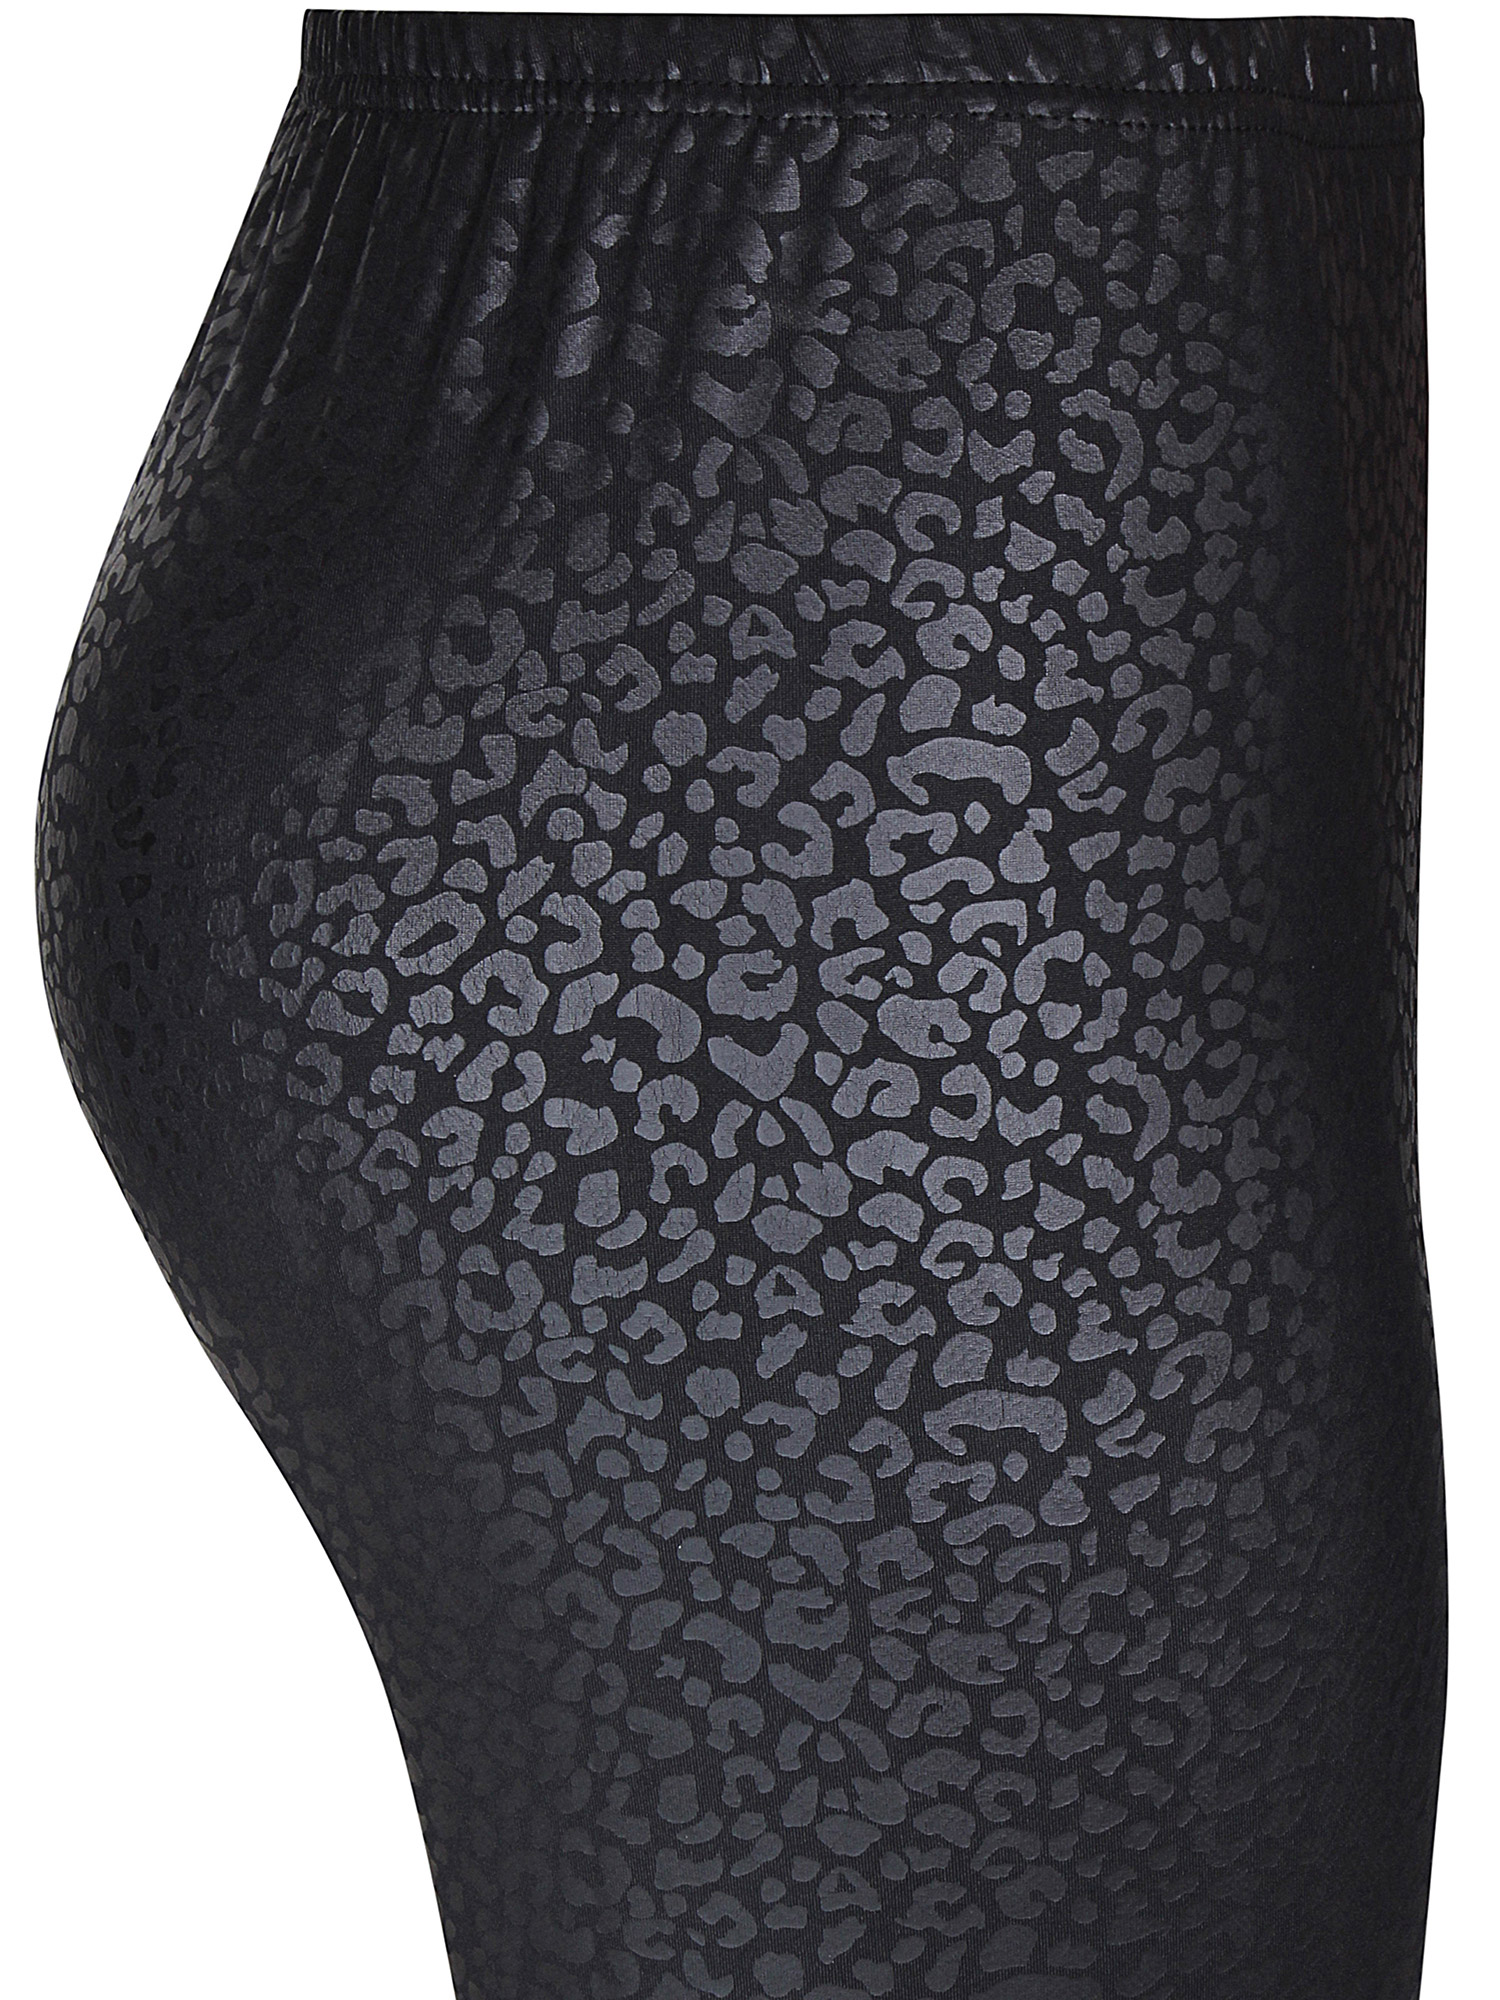 Freda - Svarte leggings med mønster i skinn look fra Zhenzi